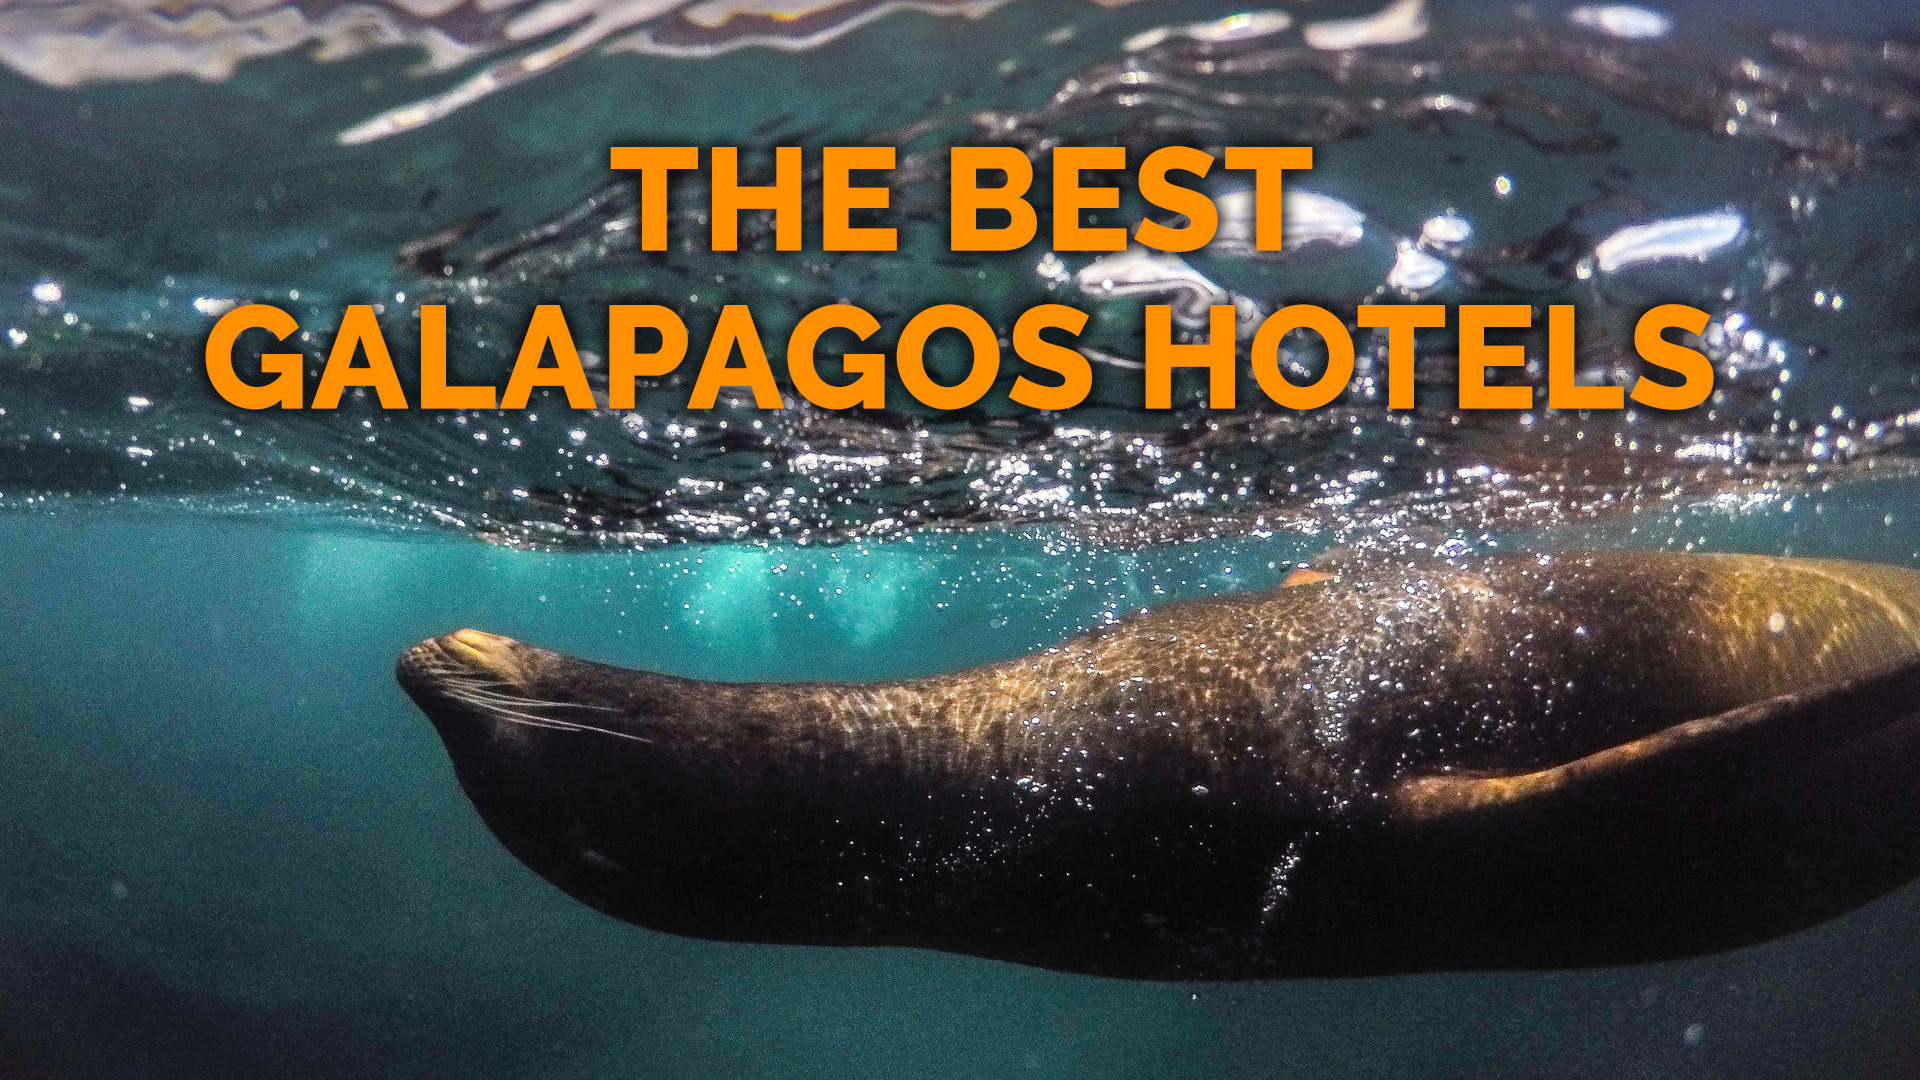 19 Best Galapagos Hotels – San Cristobal, Santa Cruz, Isabela